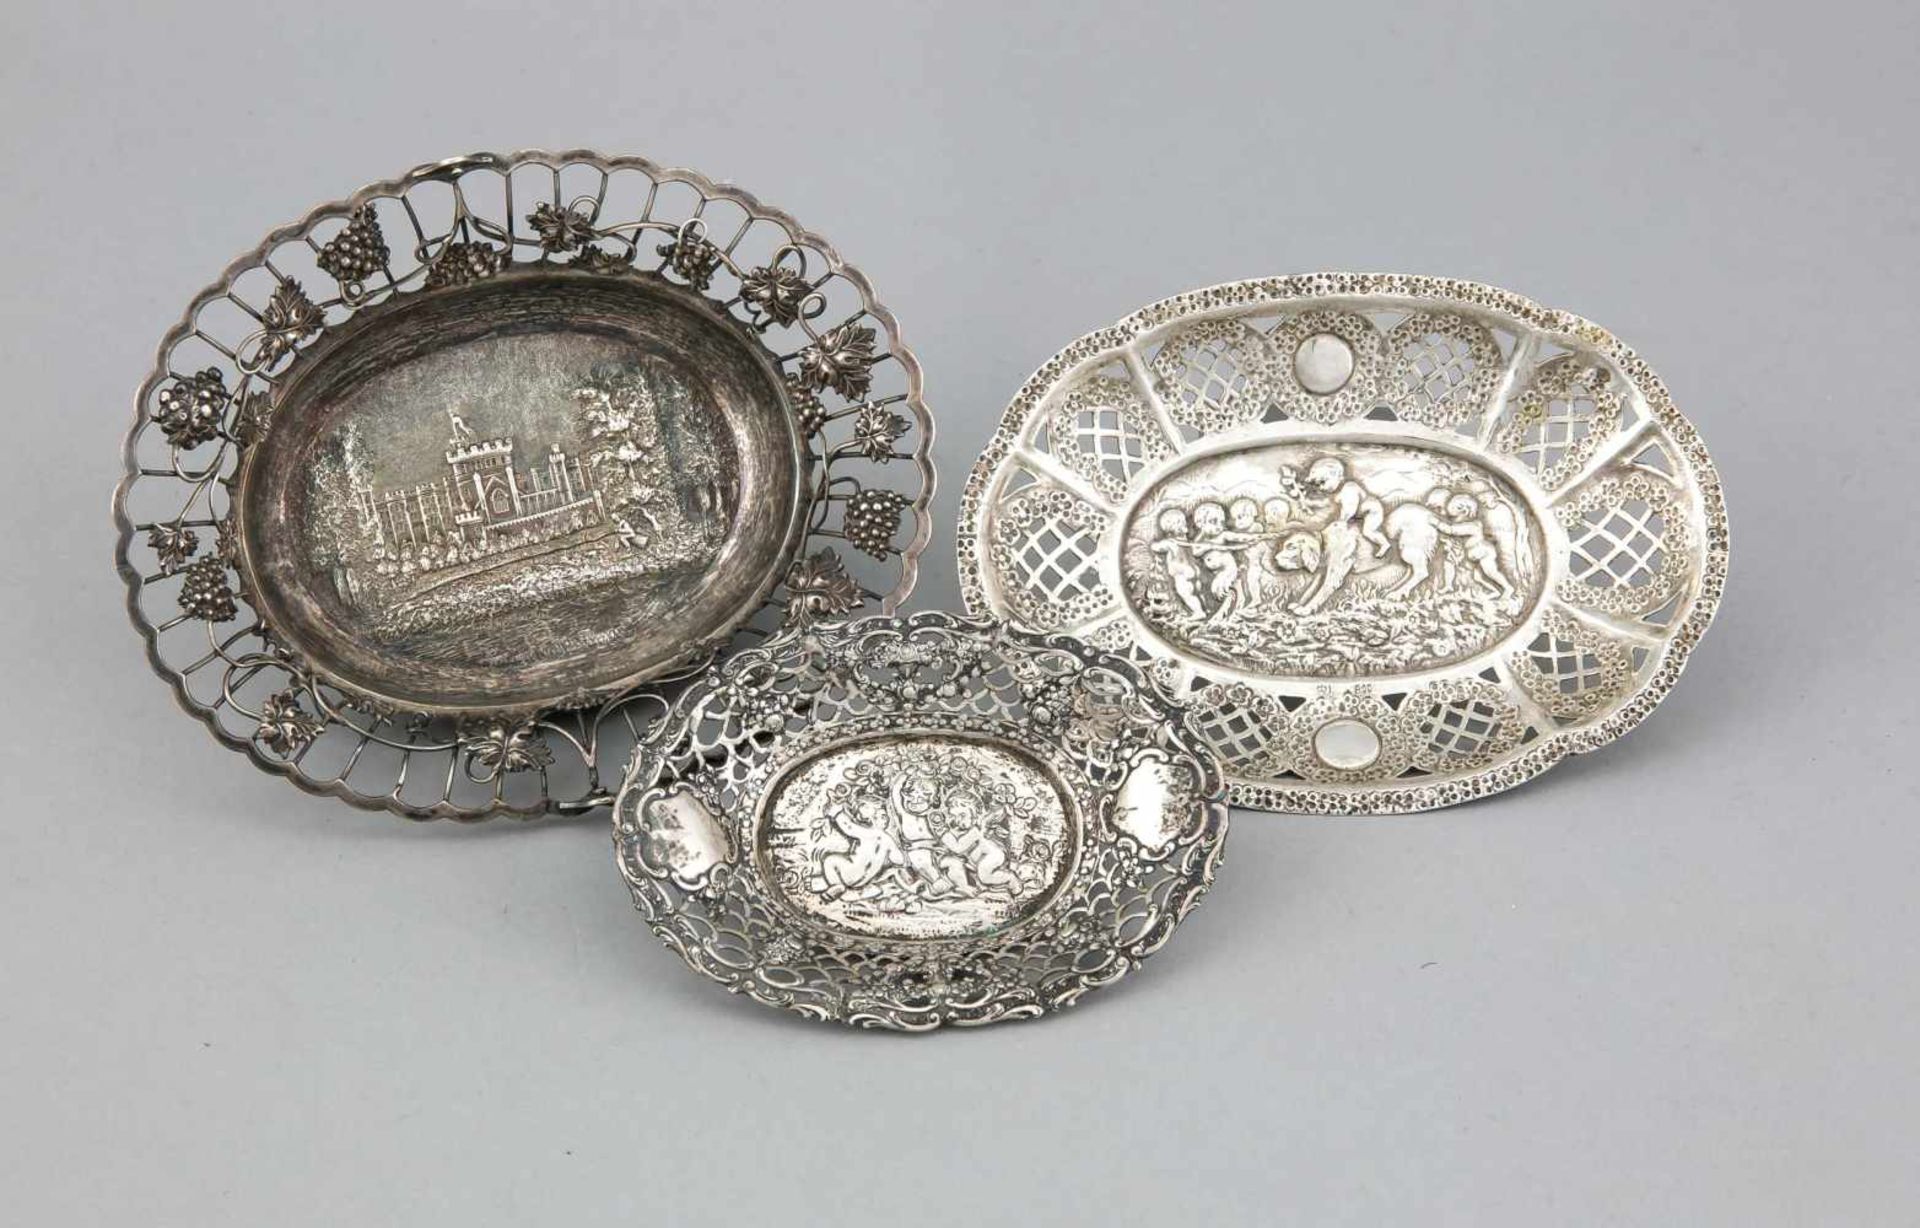 Drei Schalen, 19. Jh., 925/000 Silber, 2x getestet, jeweils ovale Form mit passig geschweifter